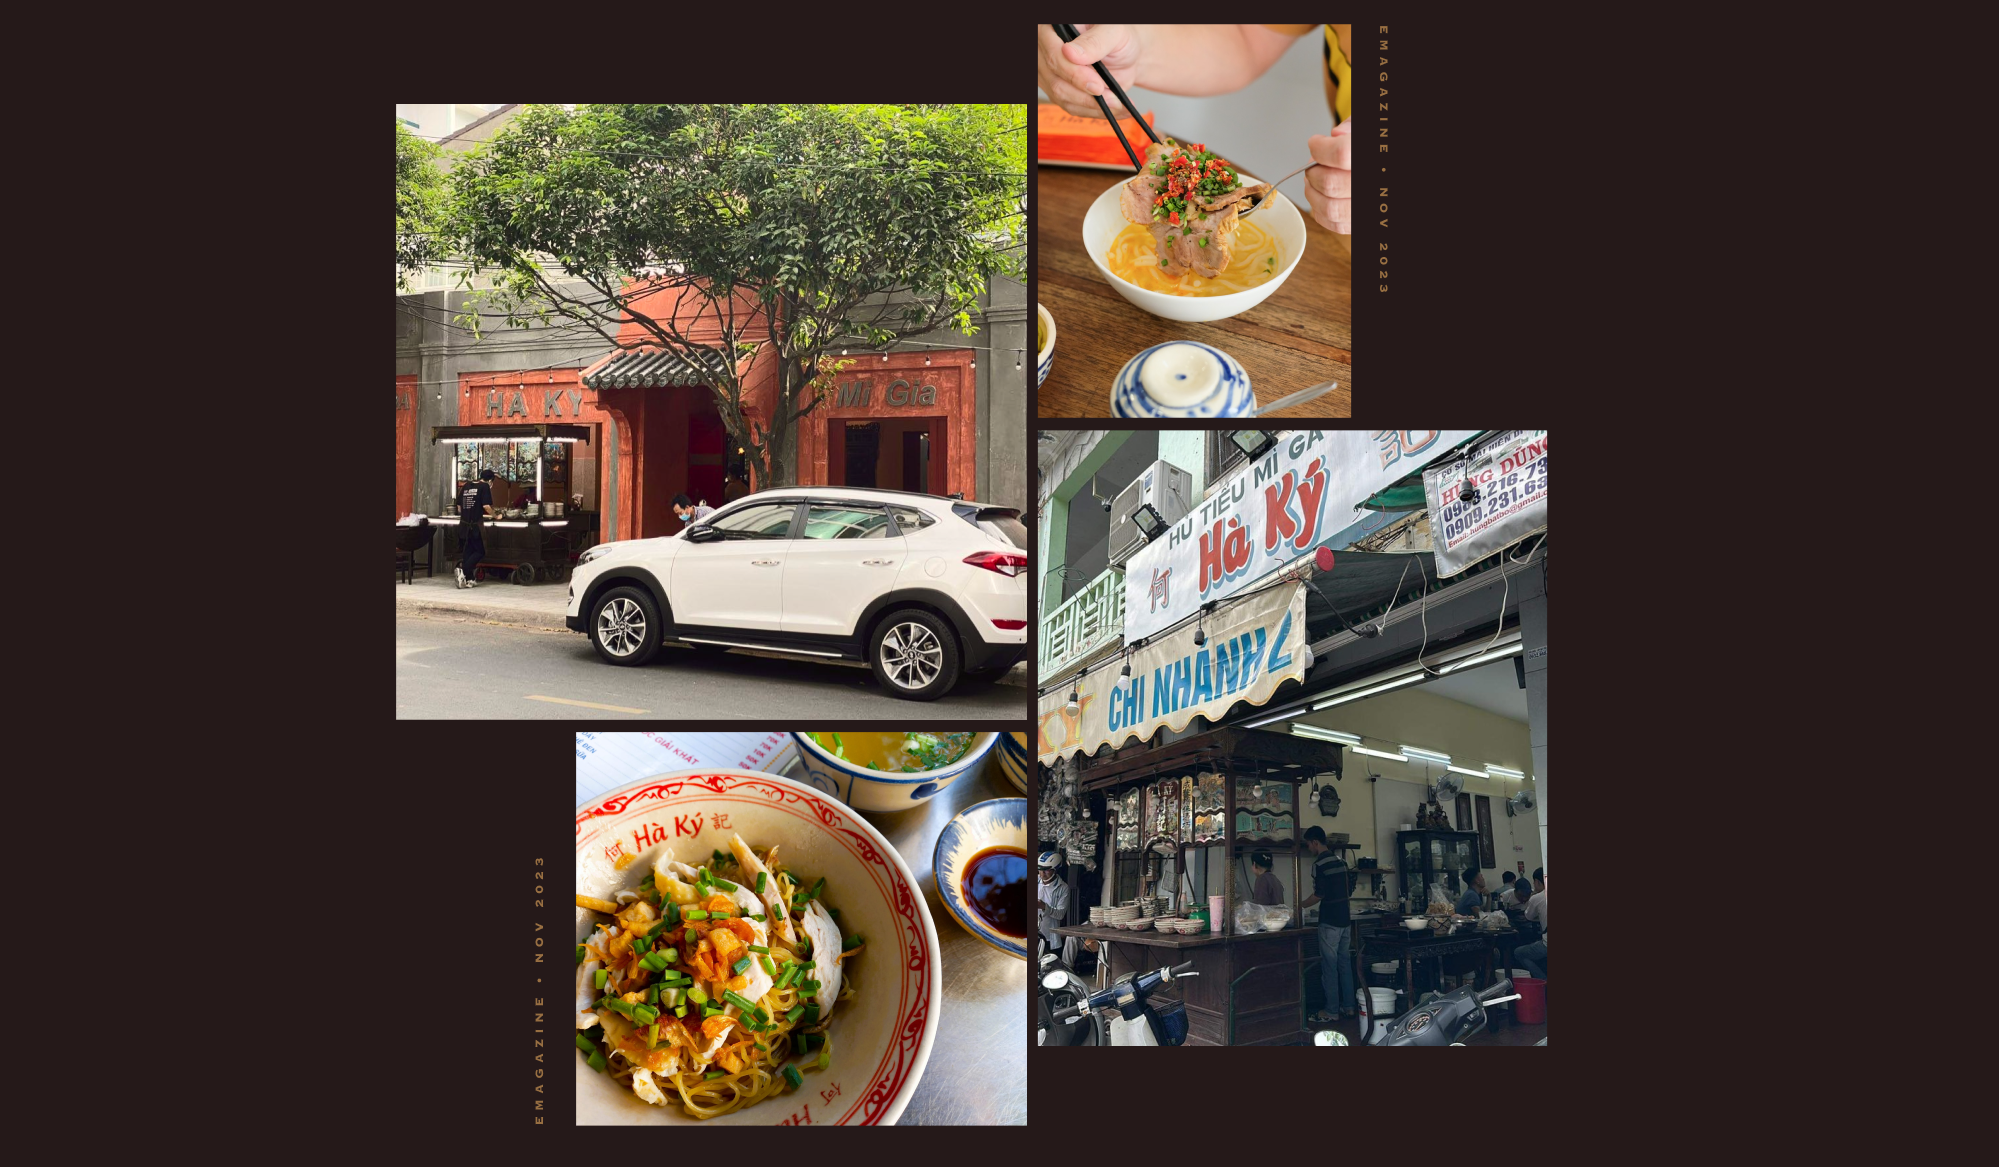 Không chỉ là một quán mì, Hà Ký còn là nơi gói ghém cái tâm vào hương vị từng món ăn - Ảnh 8.